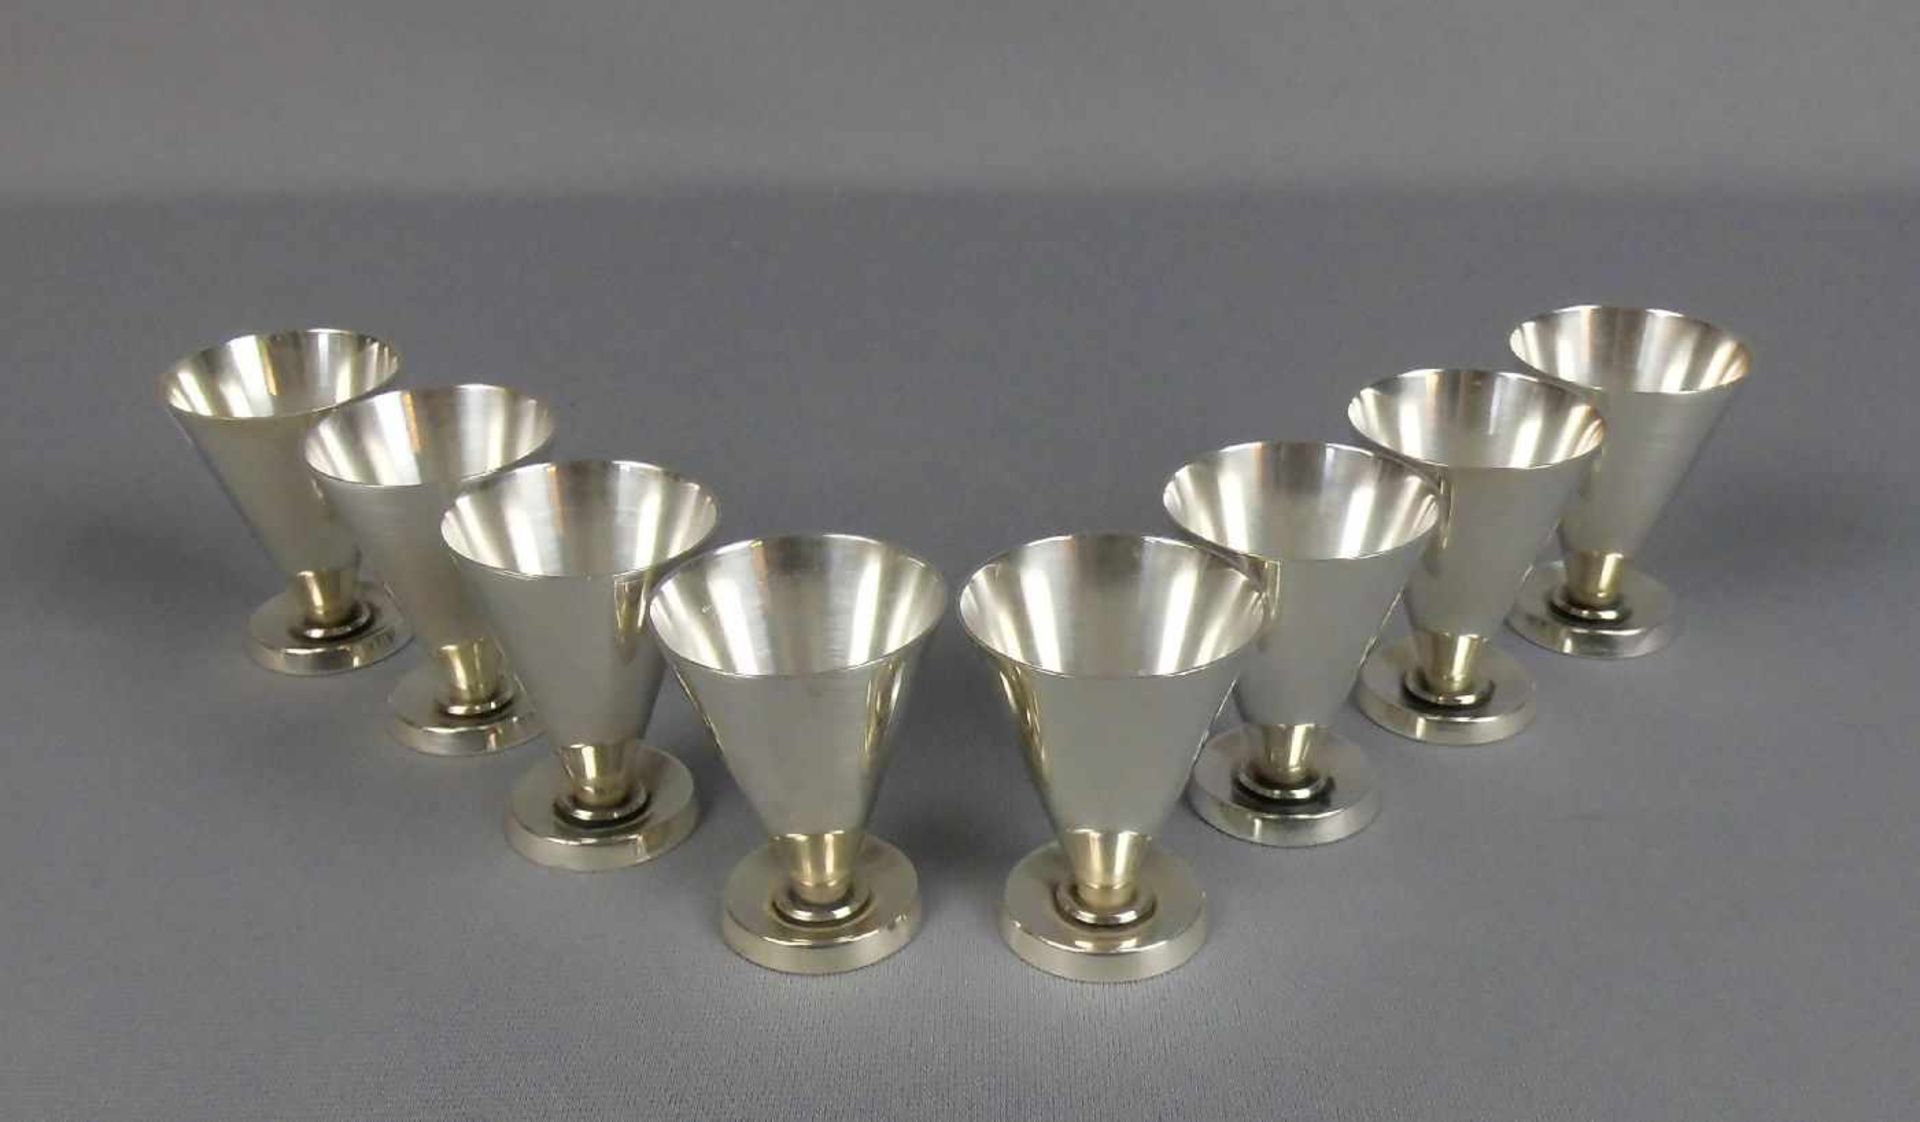 8 LIKÖR-BECHER / SCHNAPS-BECHER/ small silver cups, Sterlingsilber (357 g), unter dem Stand bez. "